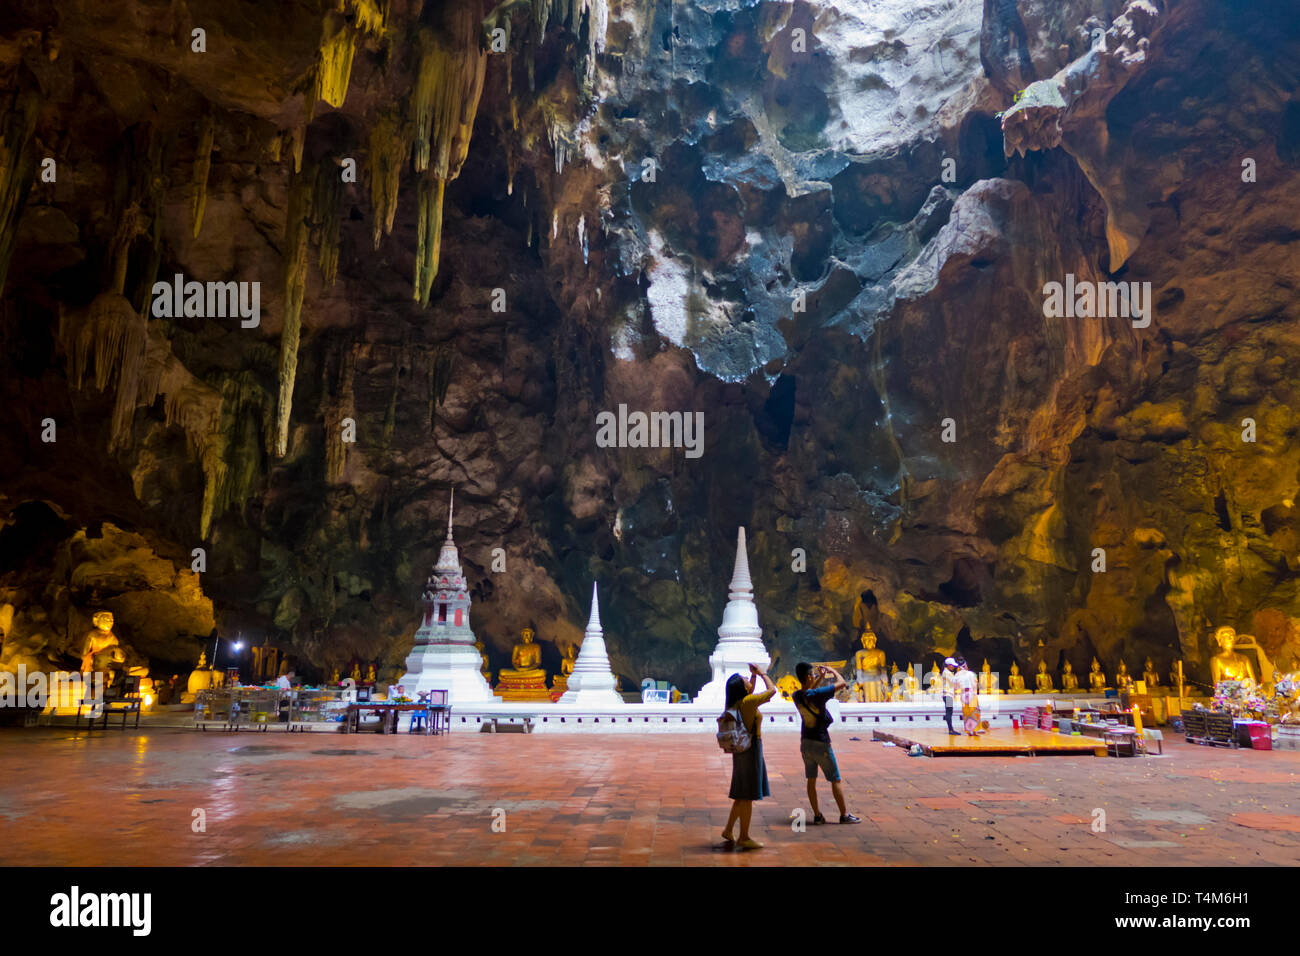 Khao Luang Cave, Phetchaburi, Thailand Stock Photo